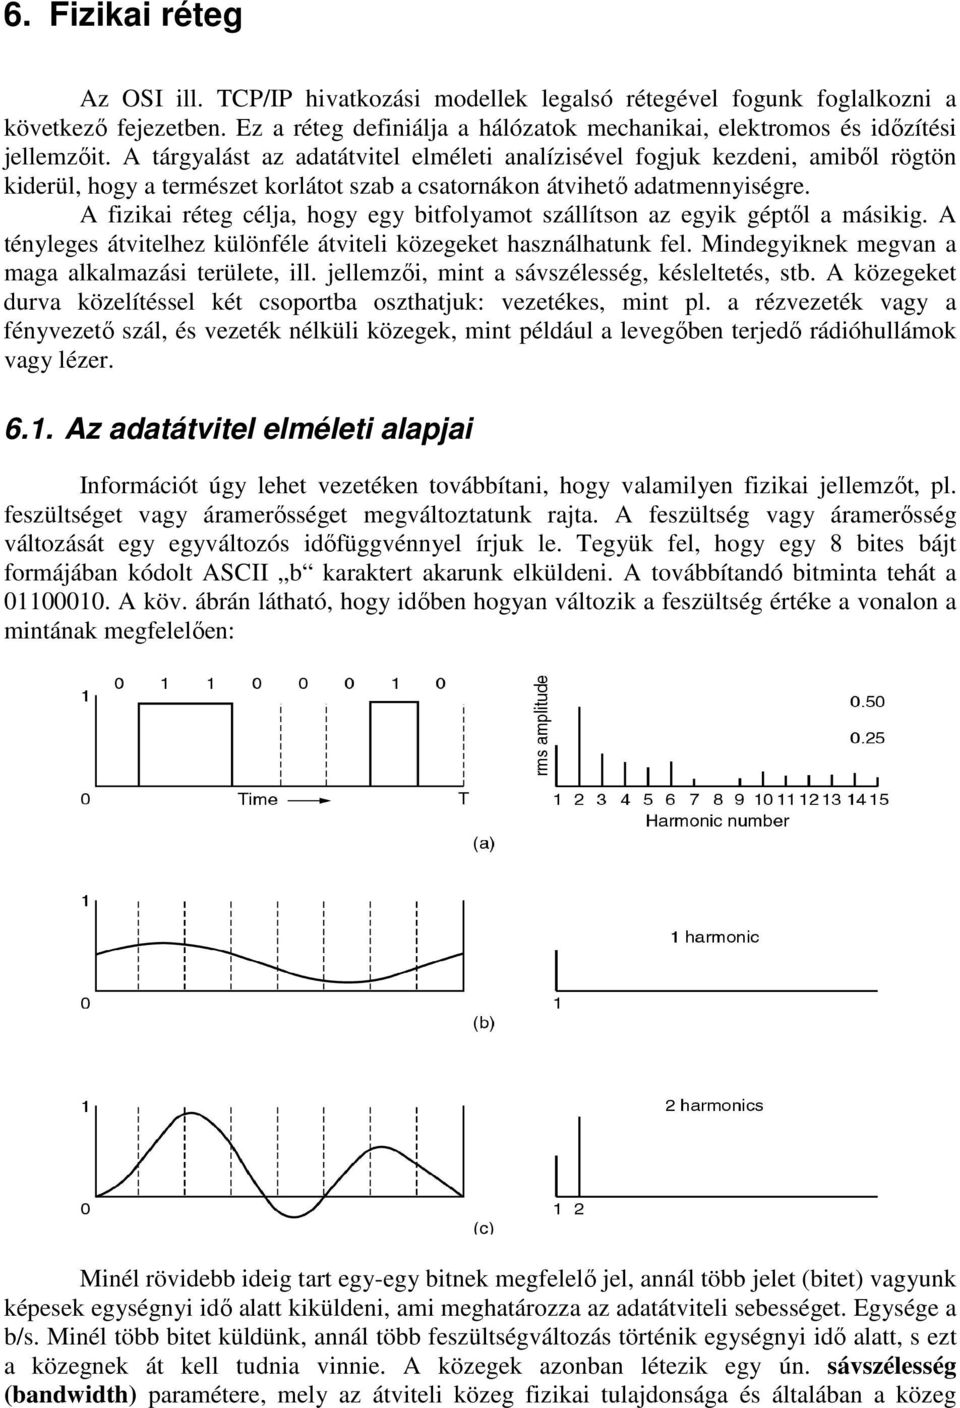 6. Fizikai réteg Az adatátvitel elméleti alapjai - PDF Ingyenes letöltés